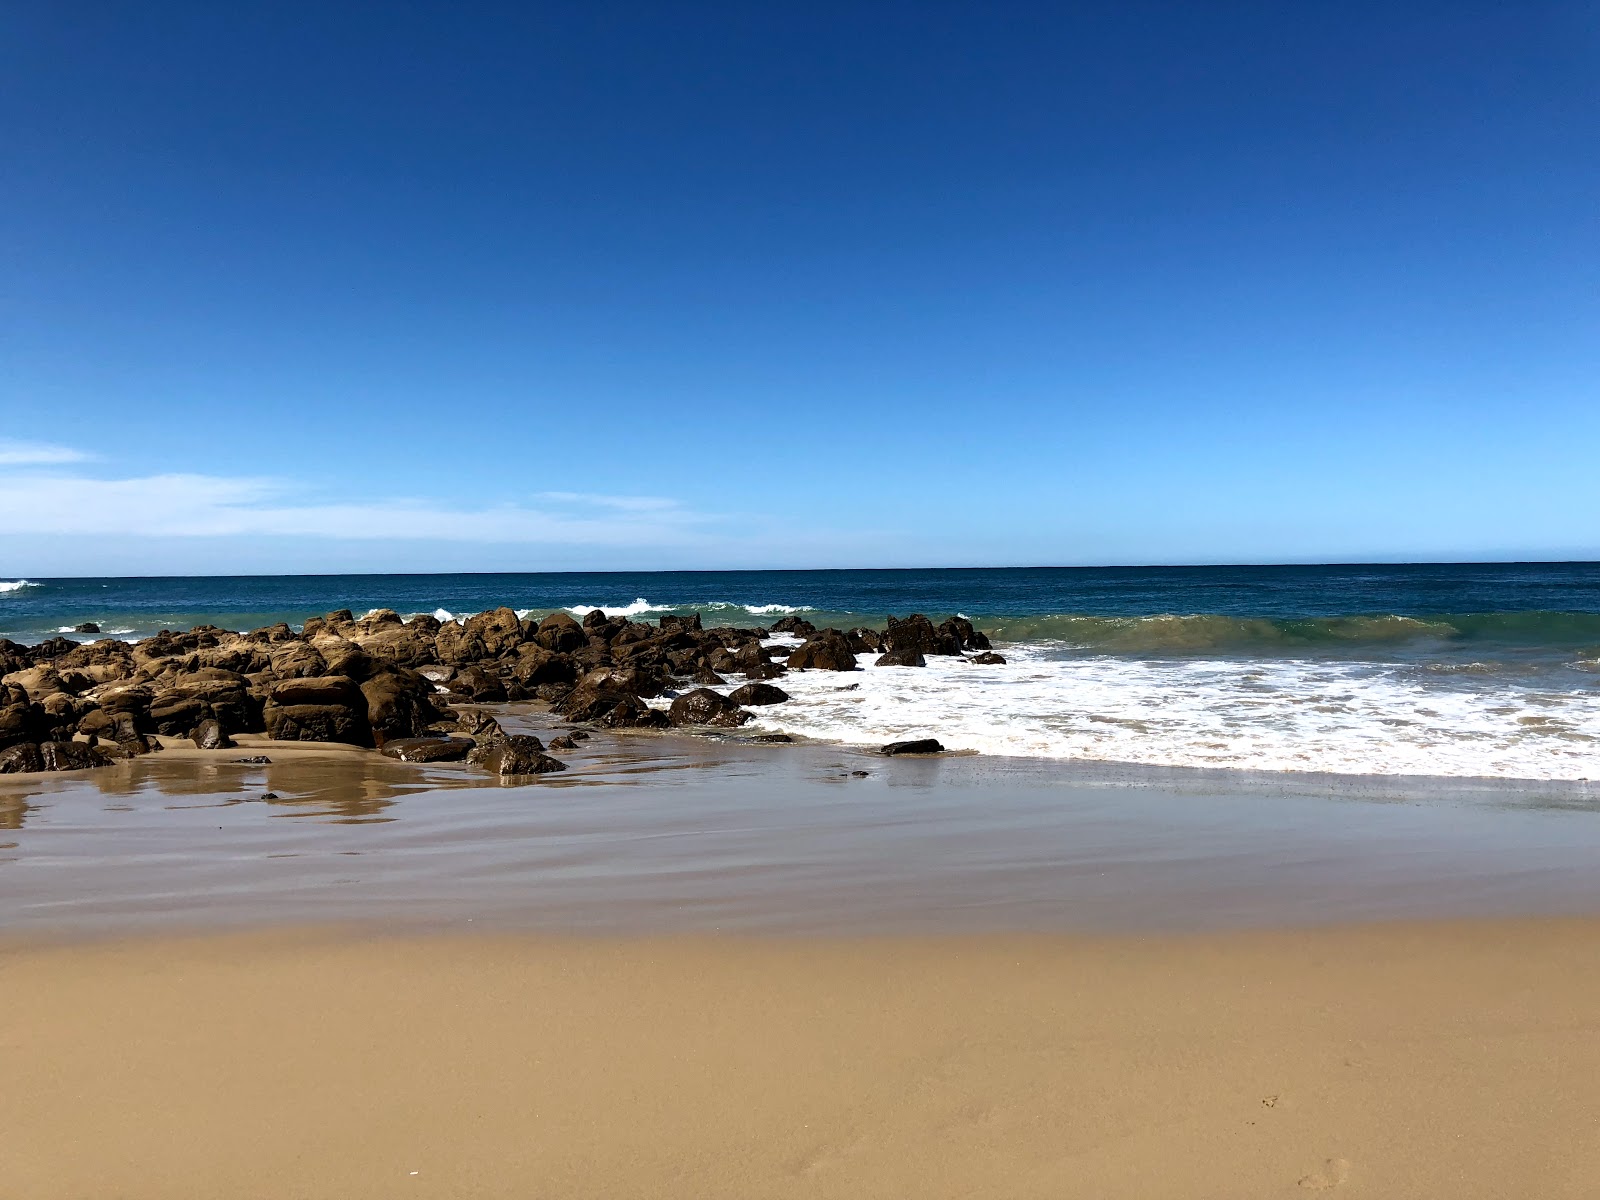 Fotografie cu Cintsa beach cu o suprafață de pietre